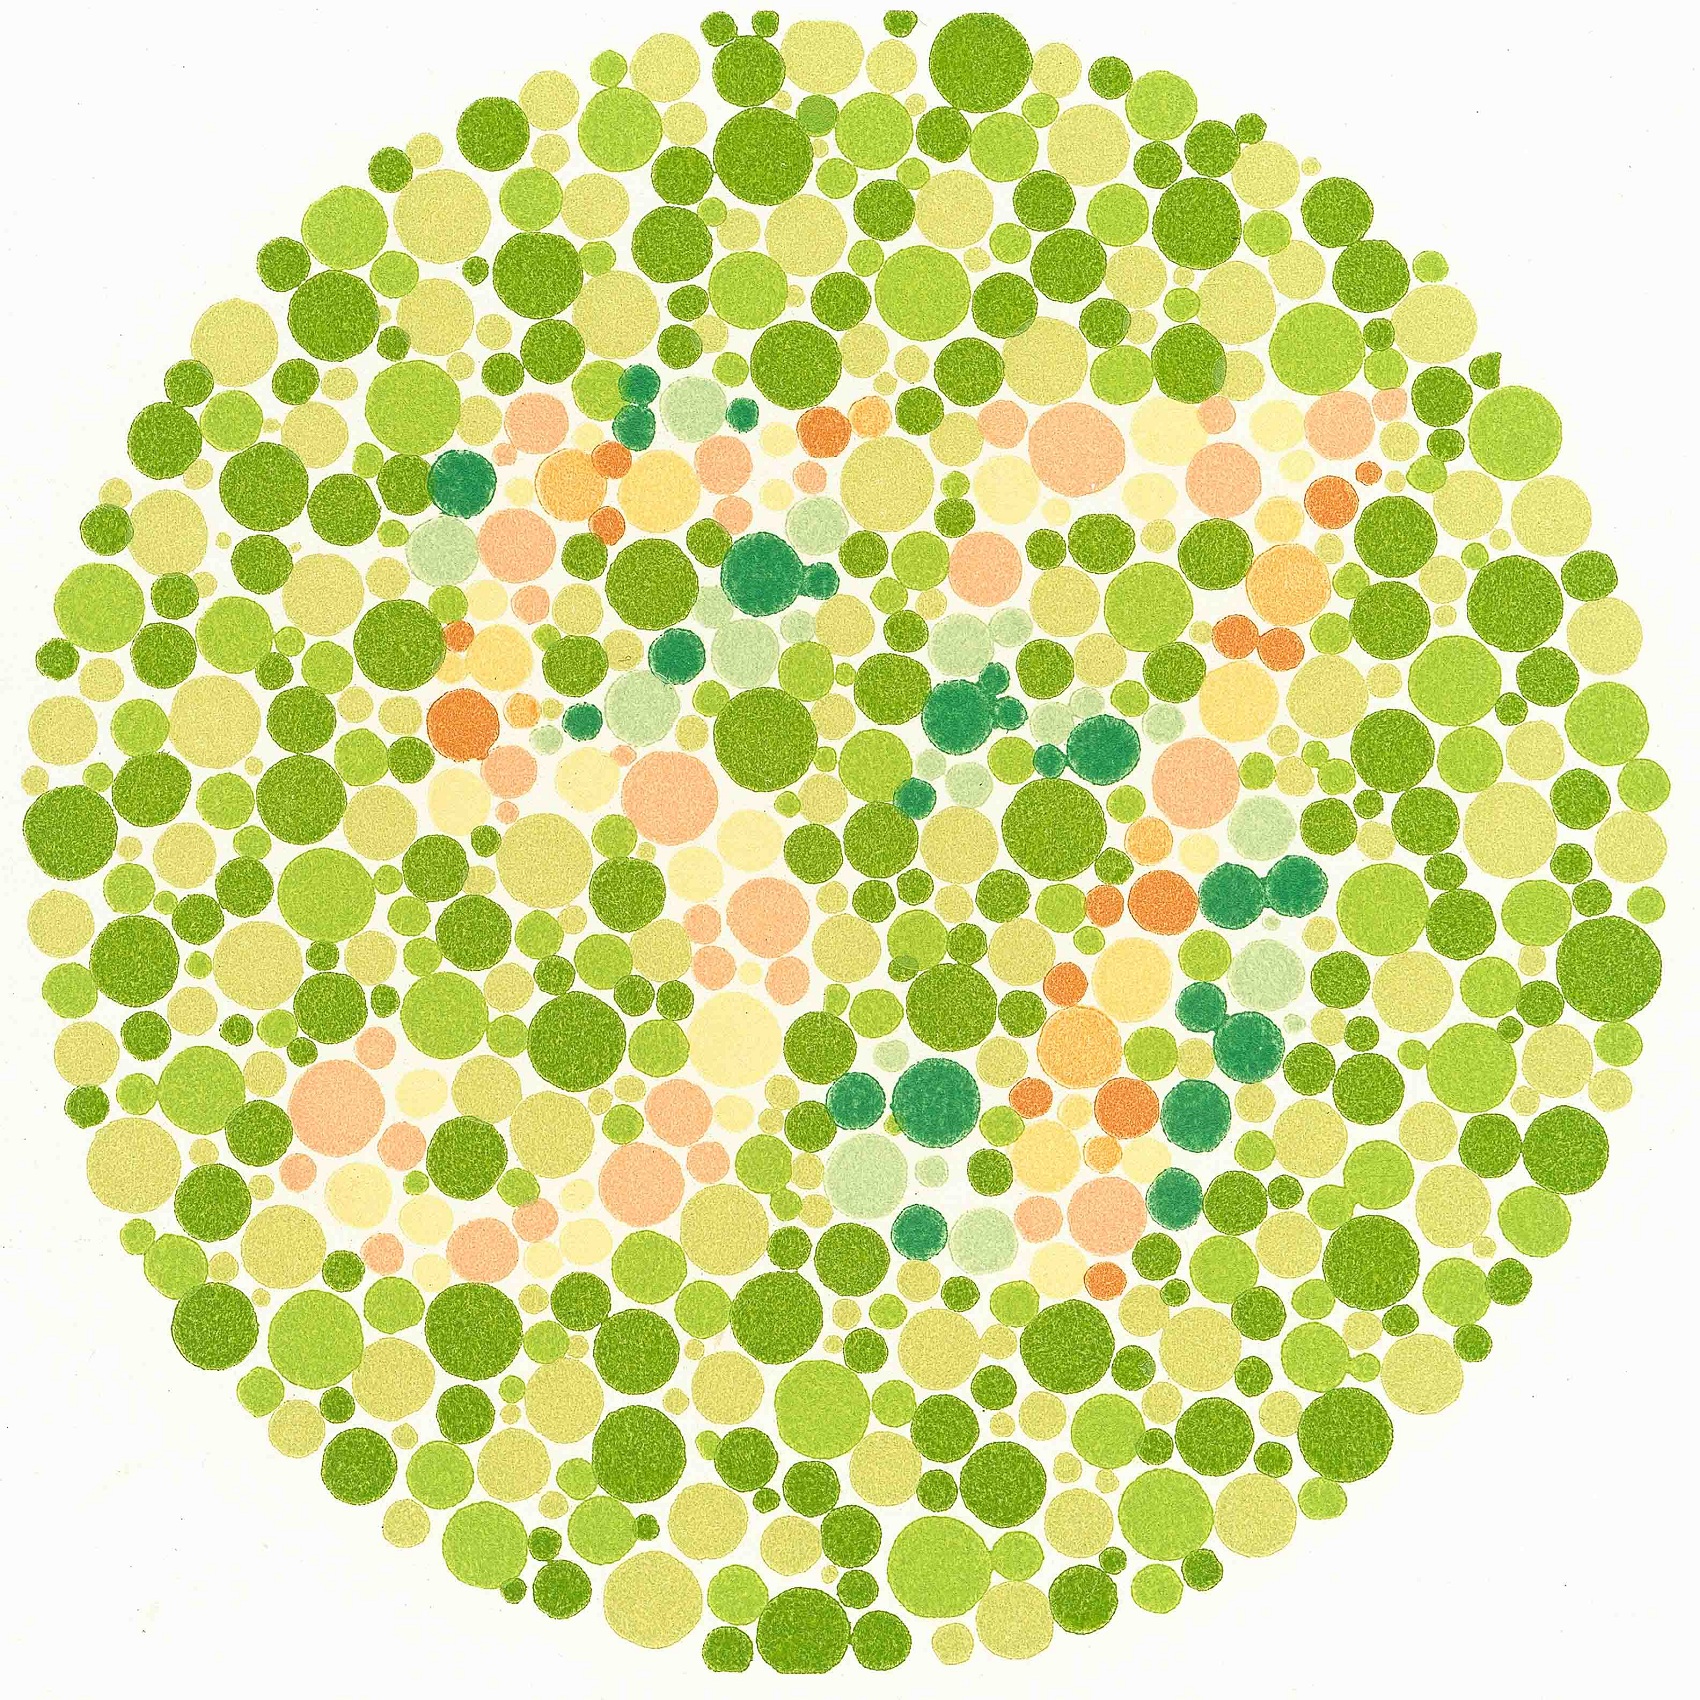 blue green color blind test for kids